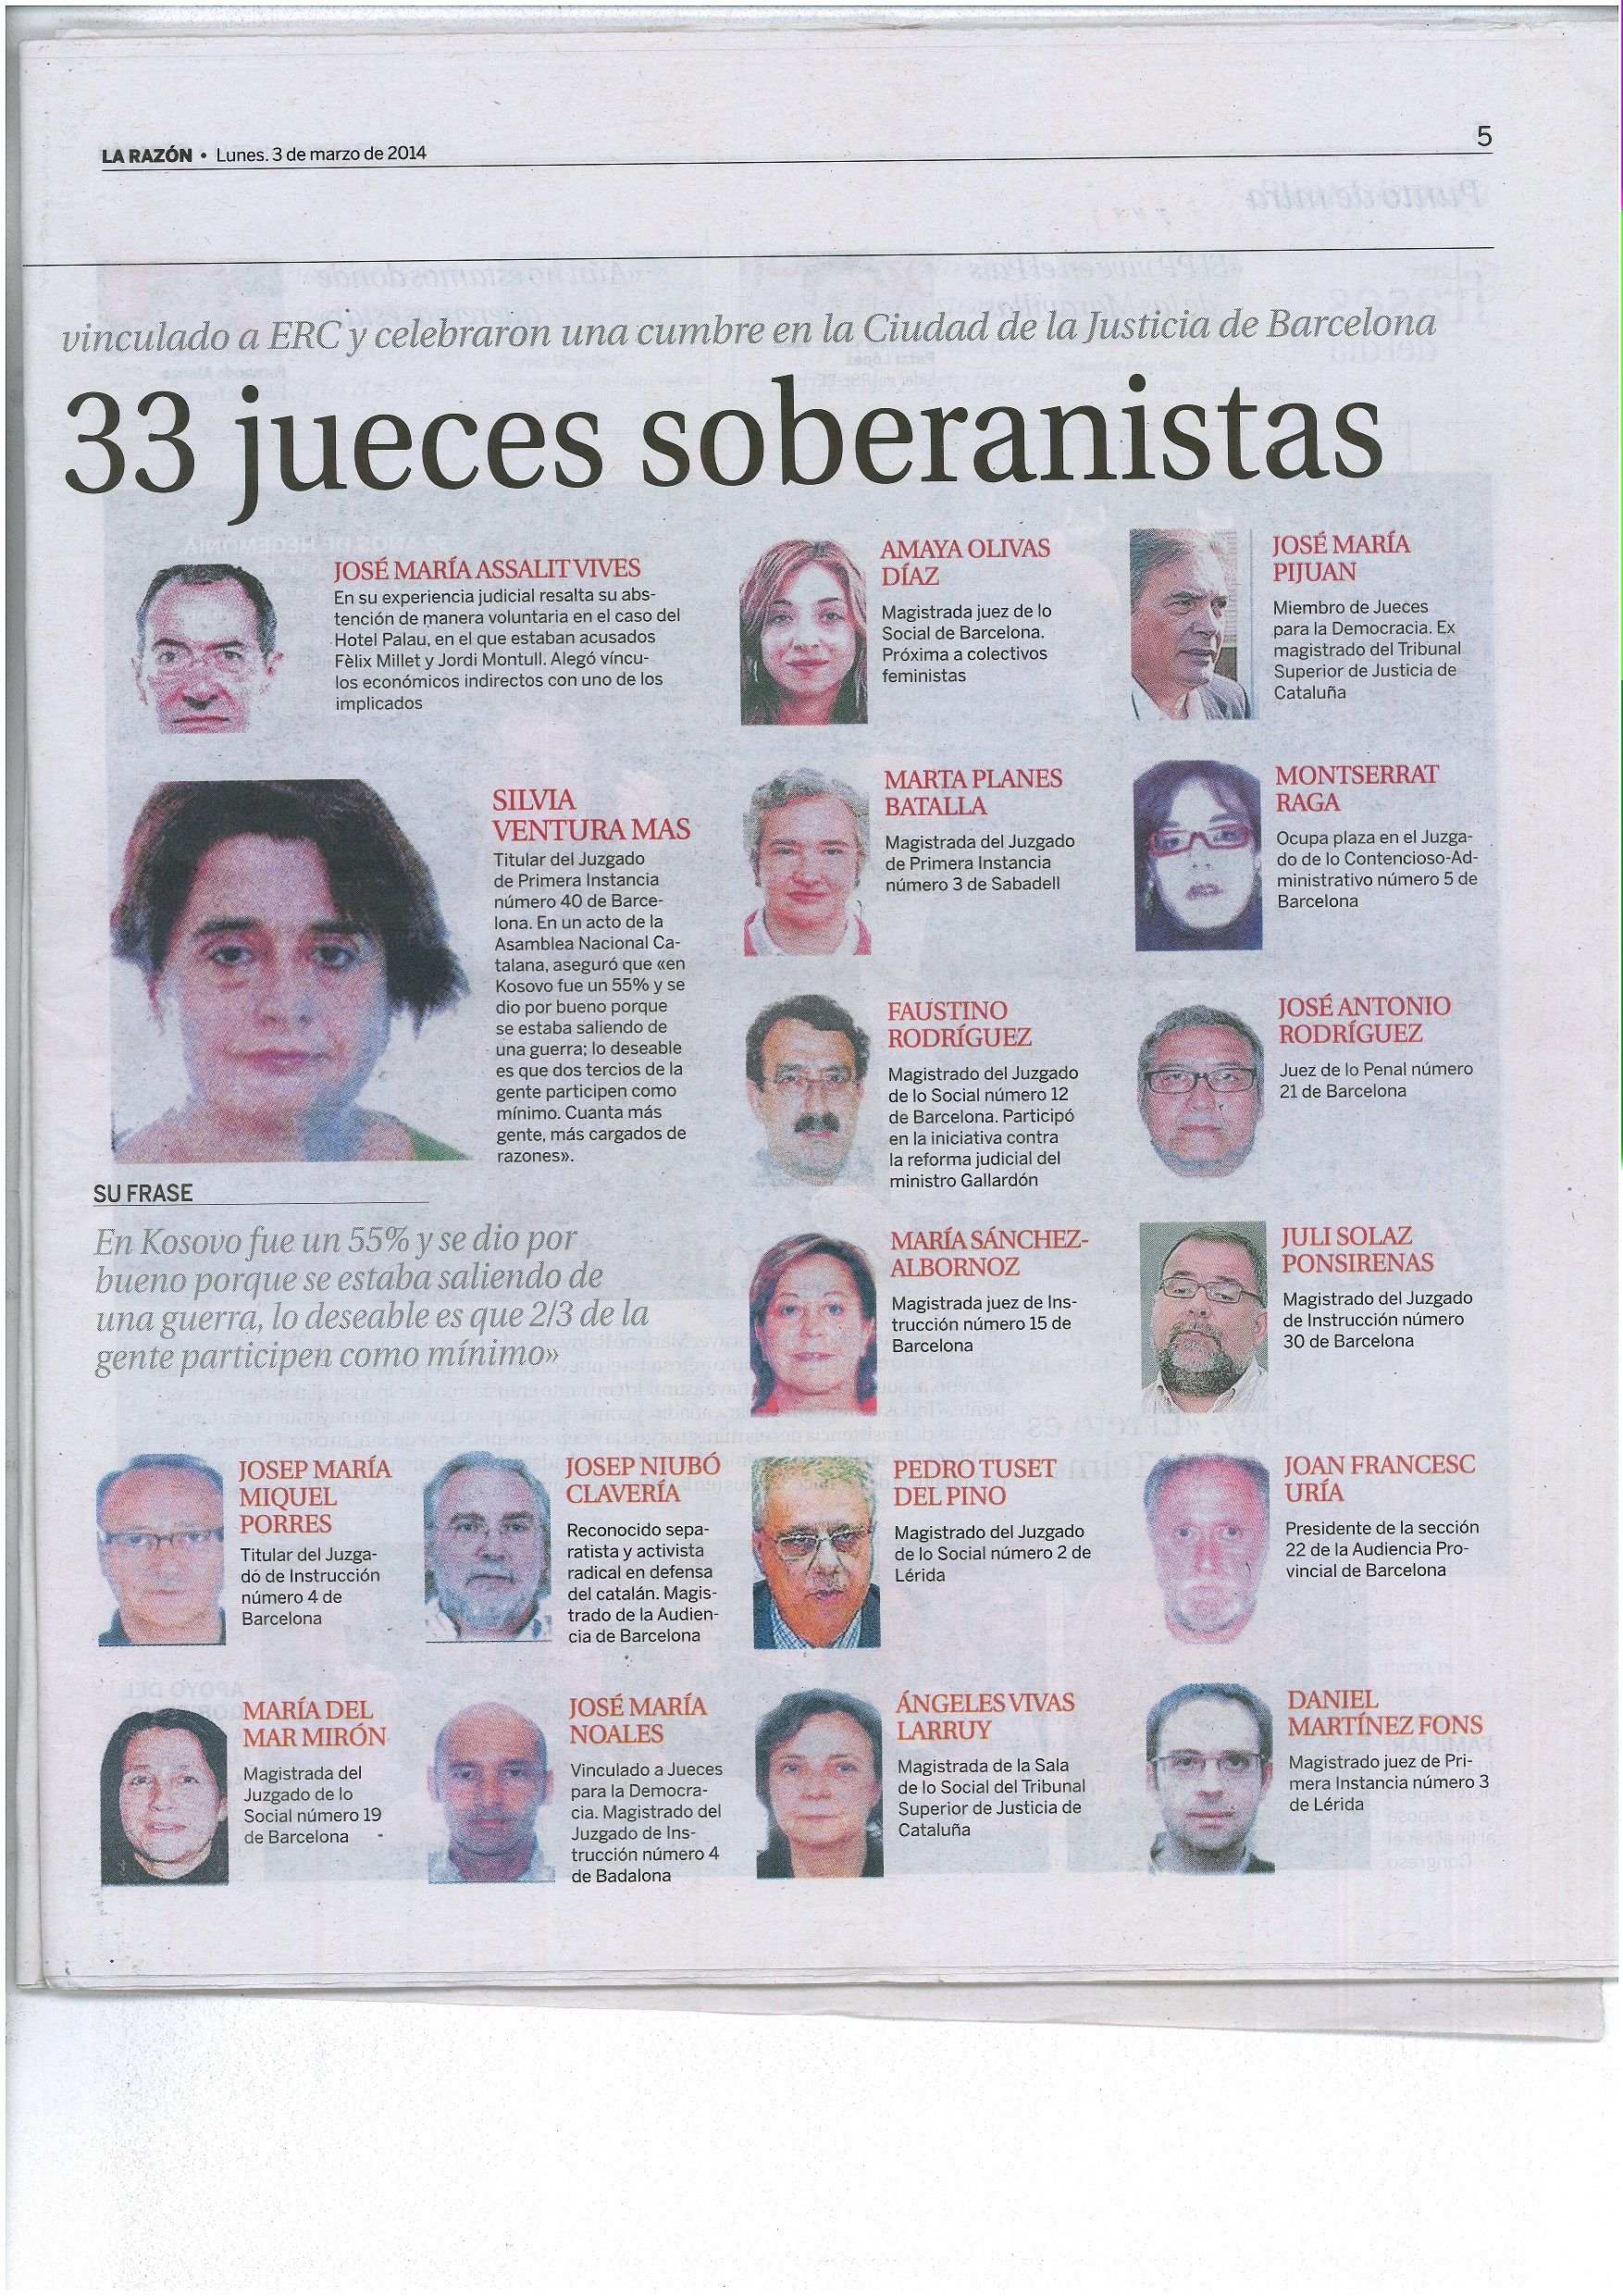 Archivado el caso contra 'La Razón' por publicar las fotos de 33 jueces proconsulta